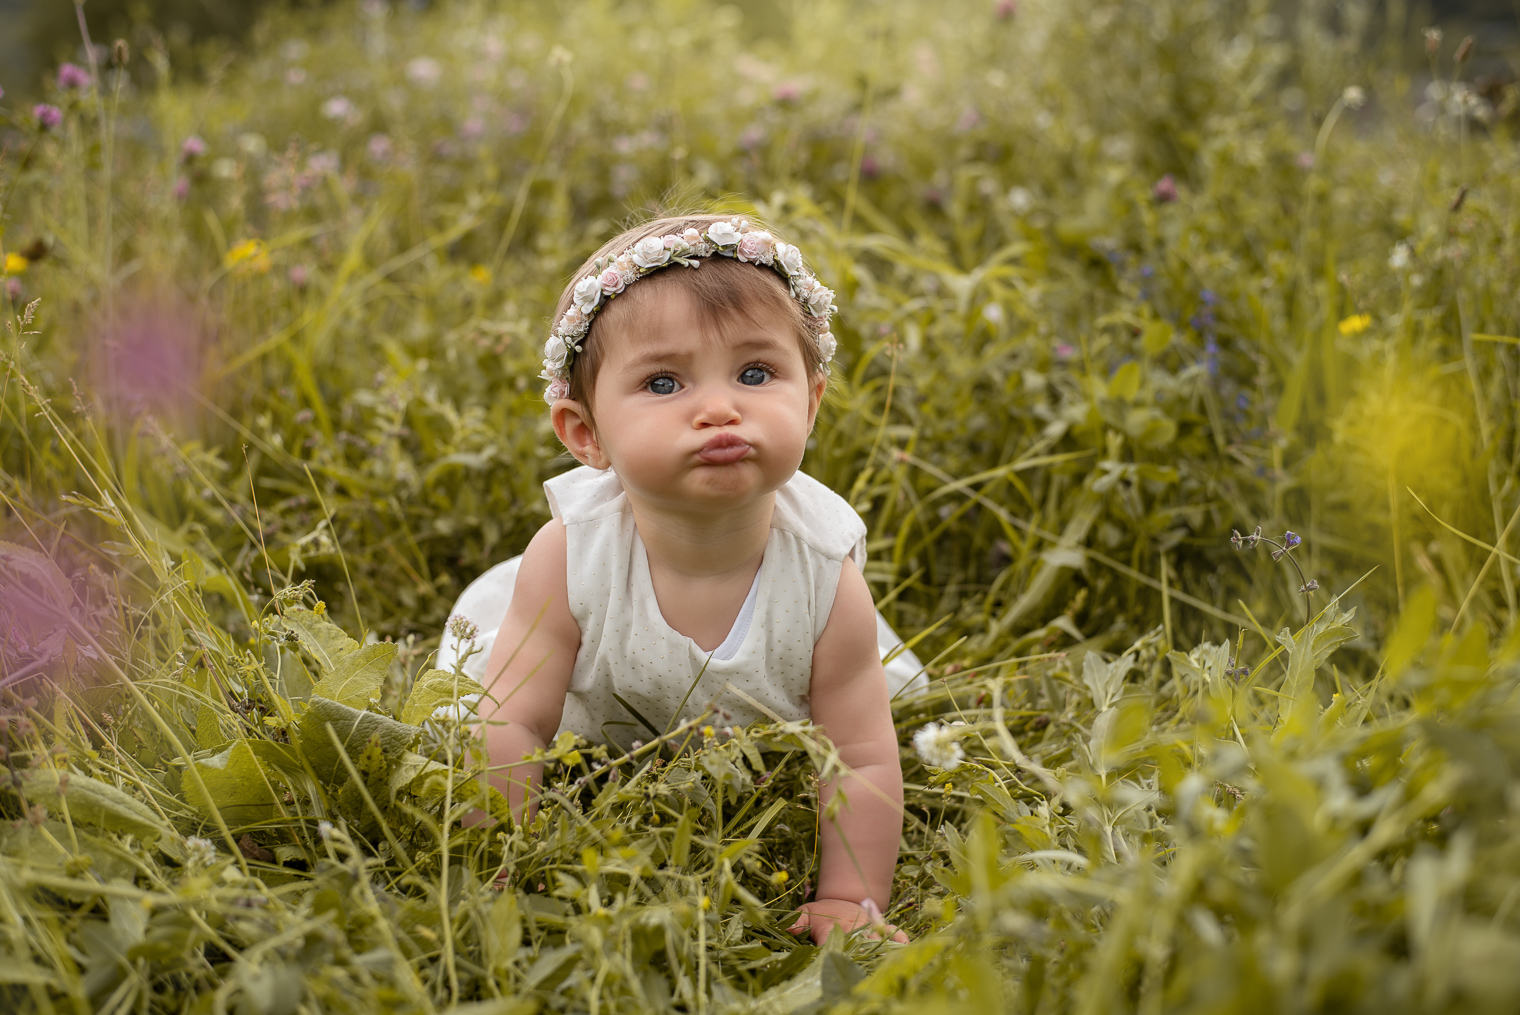 Bébé fille avec une robe blanche a pois doré et une couronne de fleurs, elle est à quatre patte dans l'herbe et fait une grimace